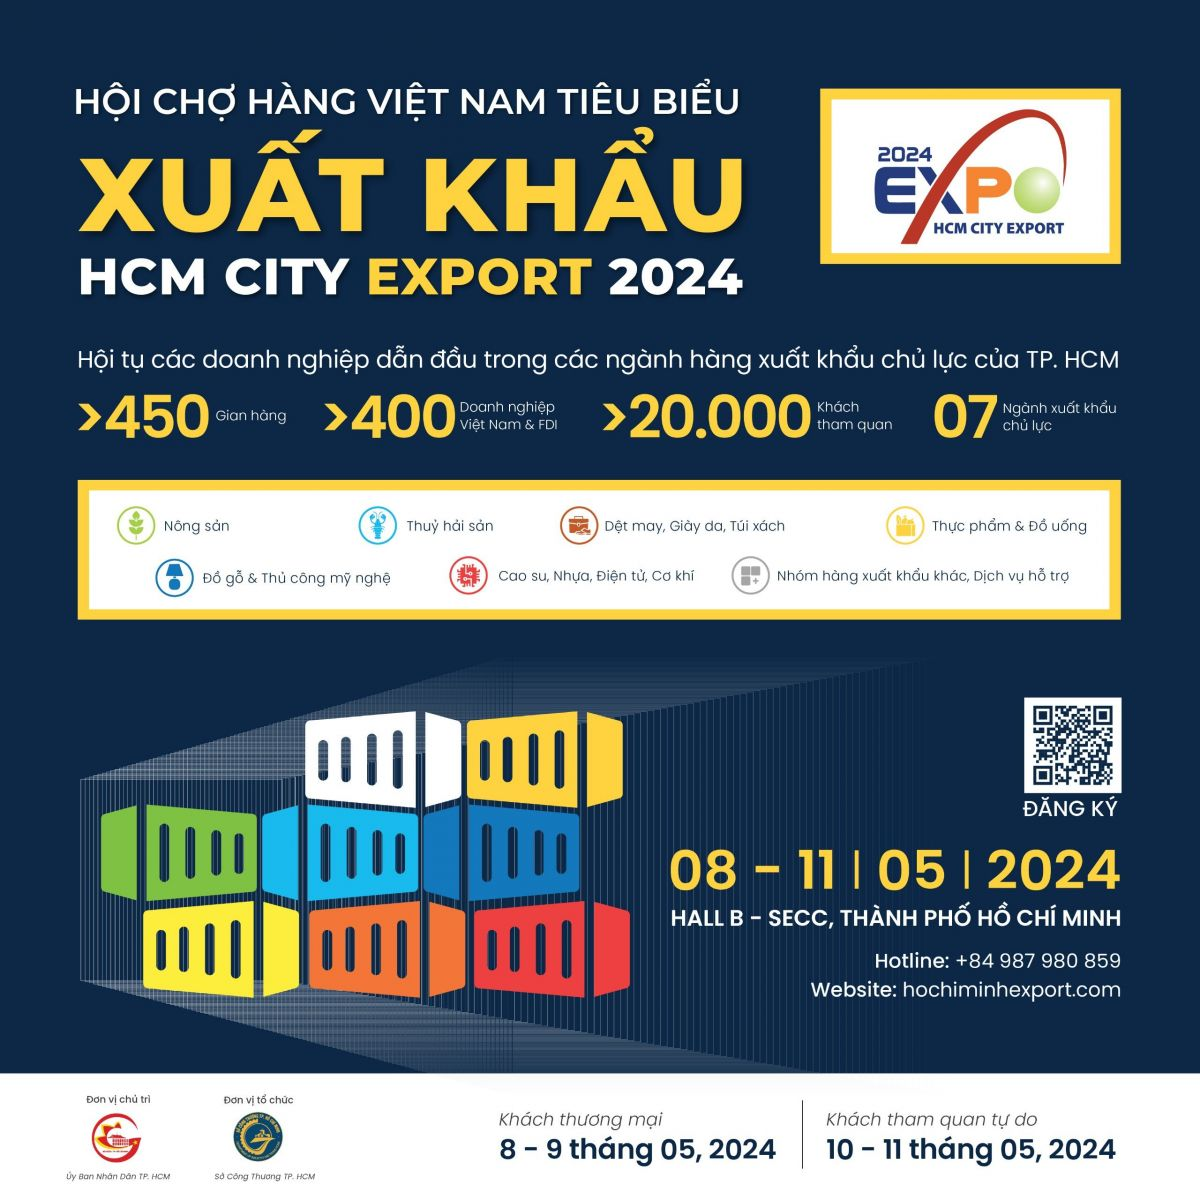 Diễn đàn, Hội chợ hàng Việt Nam xuất khẩu năm 2024 – Cơ hội thúc đẩy tiêu thụ sản phẩm đến các thị trường mới